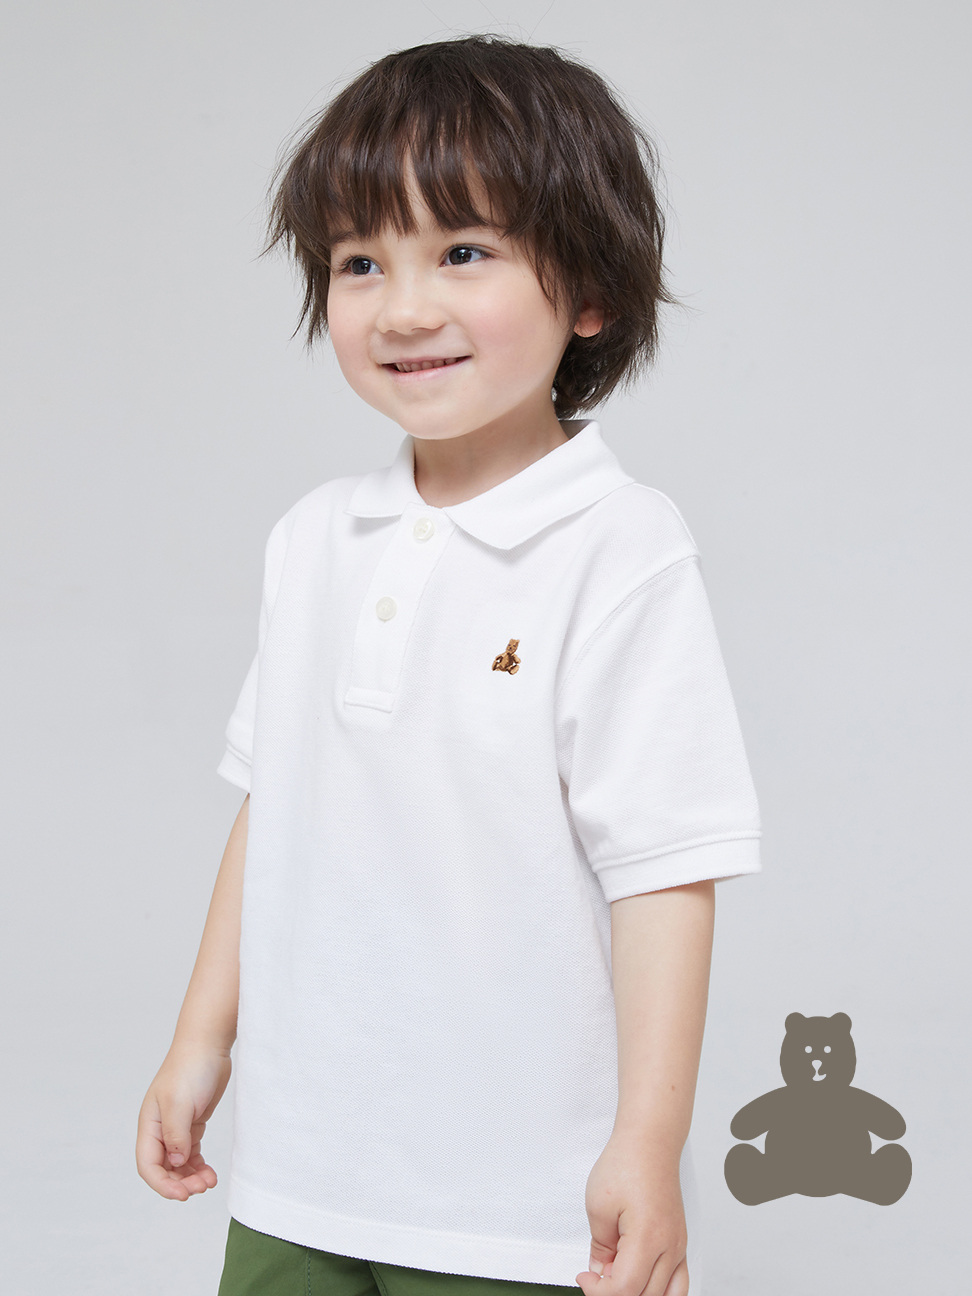 男幼童|布萊納系列 活力小熊刺繡運動POLO衫